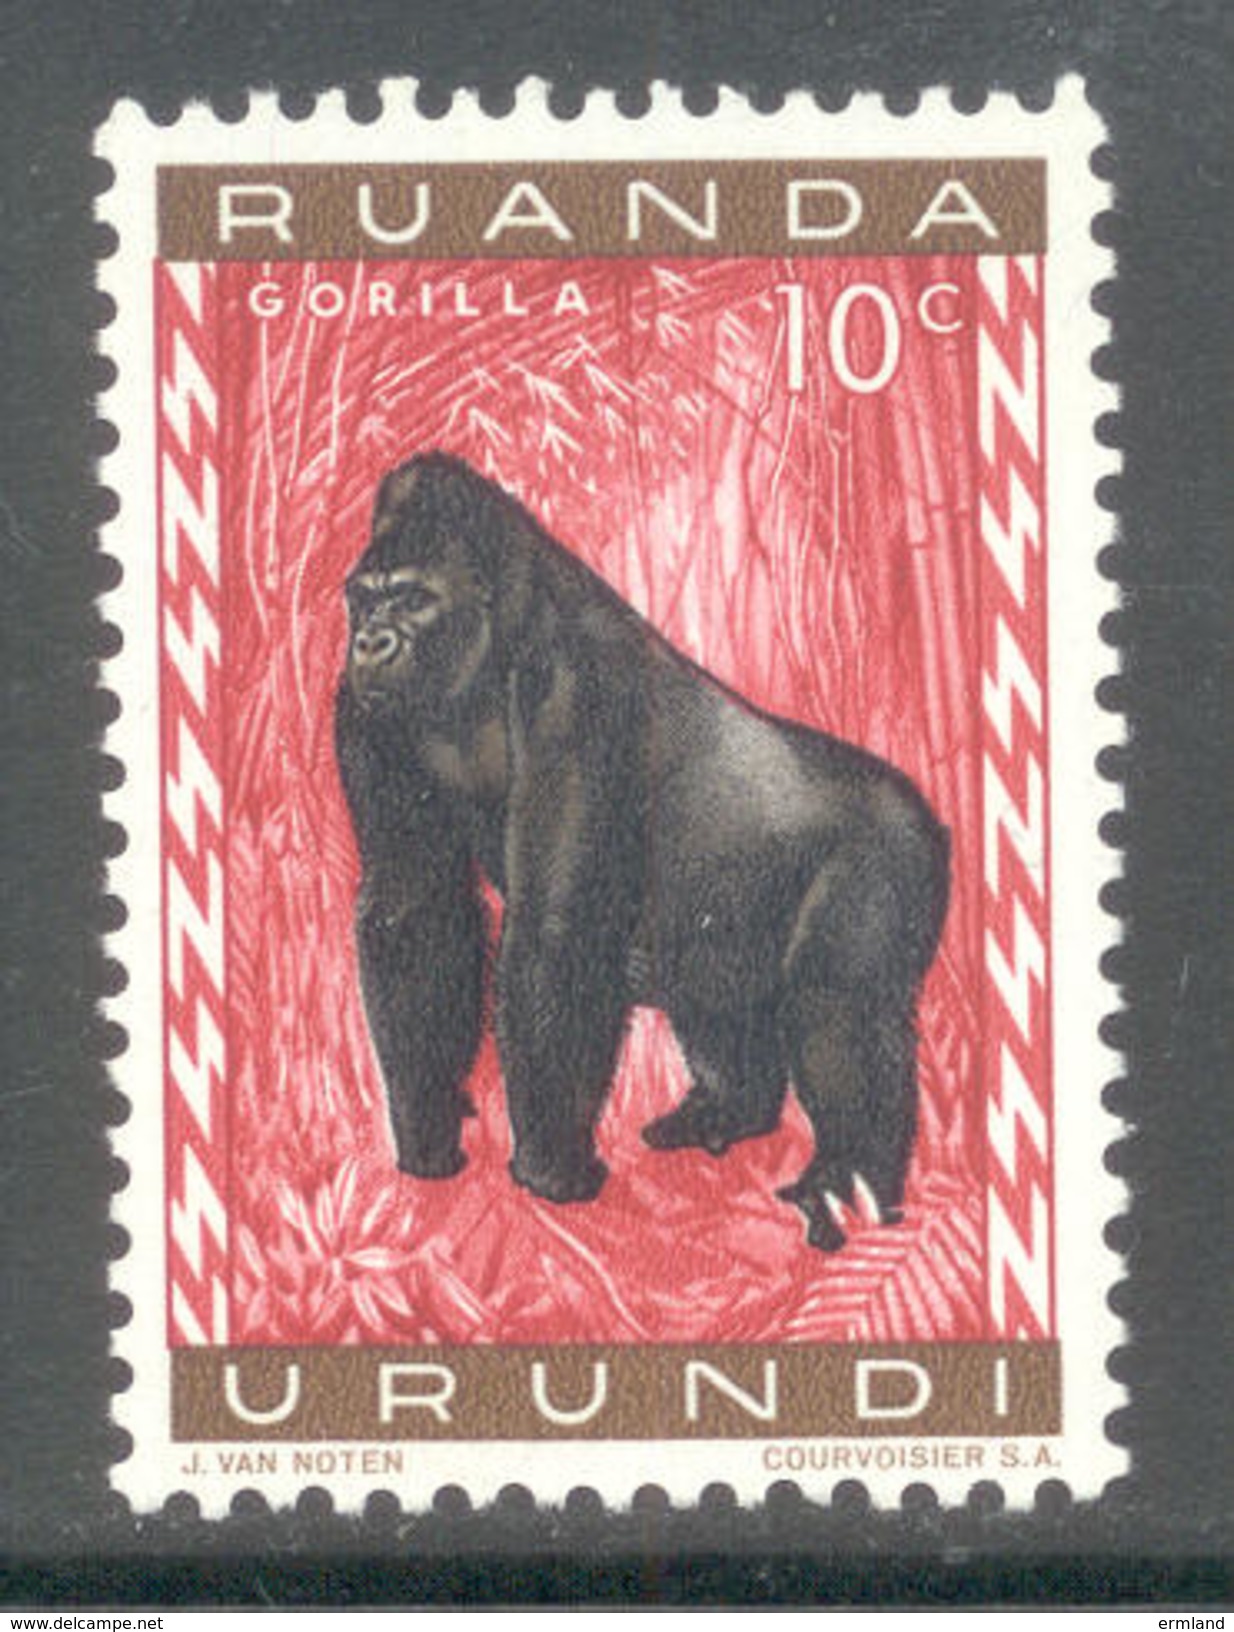 Ruanda Urundi 1959 - Michel Nr. 161 A ** - Ungebraucht